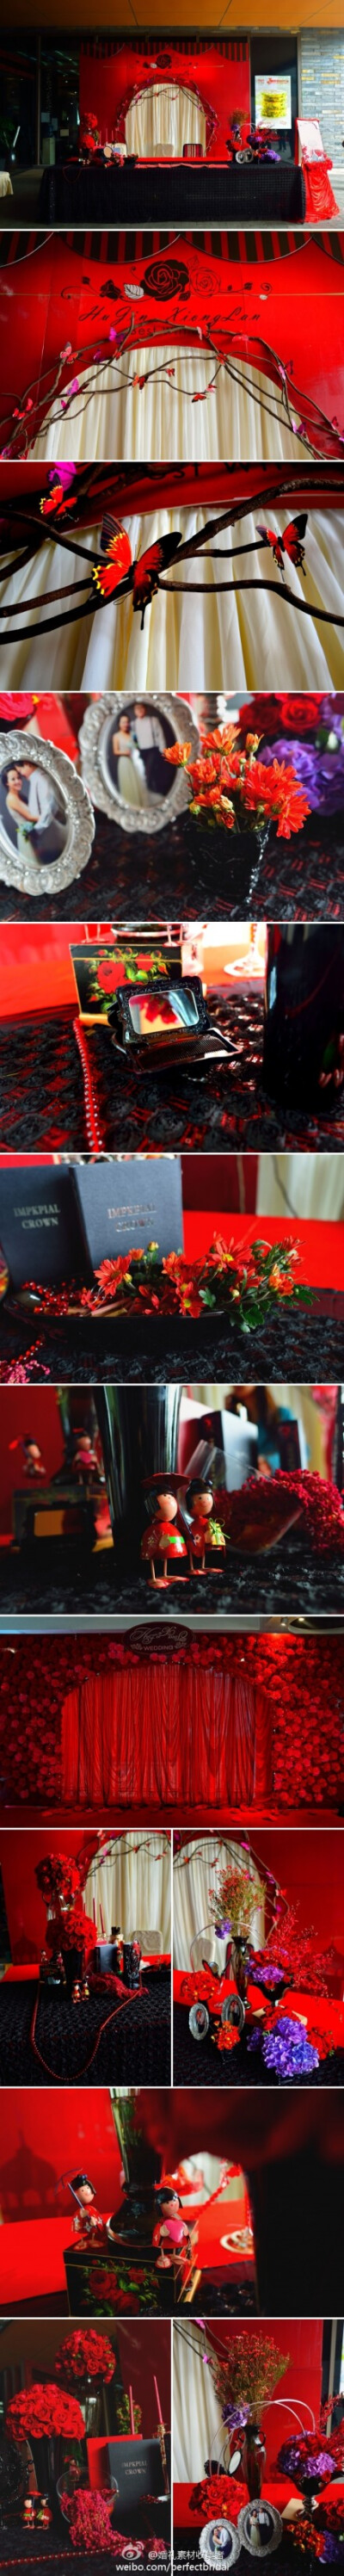 【欢乐谷老房子/蝶恋】整个婚礼色系采用红黑色系，与欢乐谷老房子建筑的装饰色彩达成一致。背景采用大面积的花朵堆砌，然后签到桌的蝴蝶飞舞，形成蝶恋的主题。大胆的运用了黑色的桌布，黑色的花器，黑色的装饰品。 …